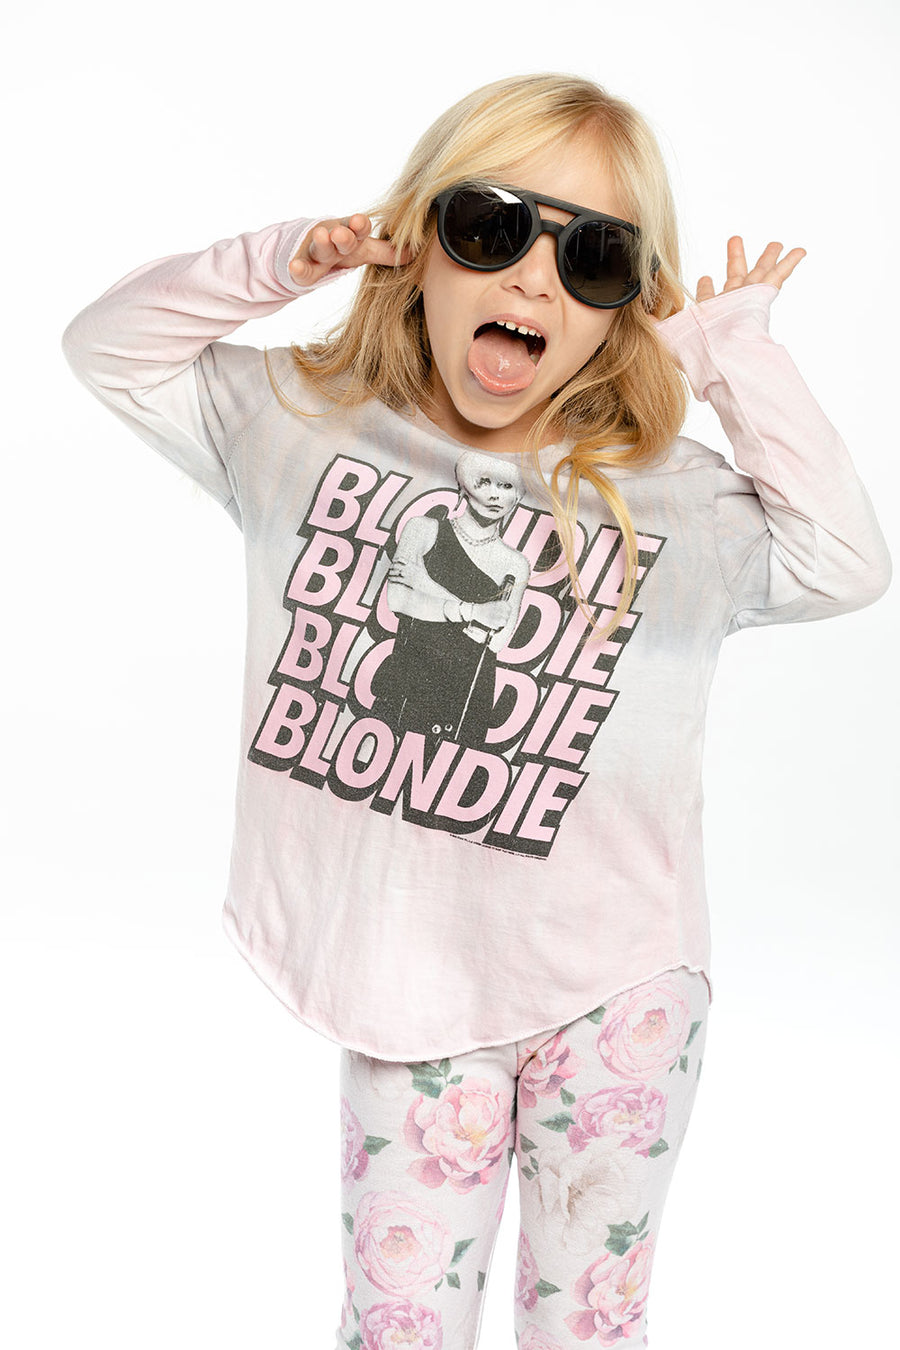 Blondie - Blondie Stacked GIRLS - chaserbrand